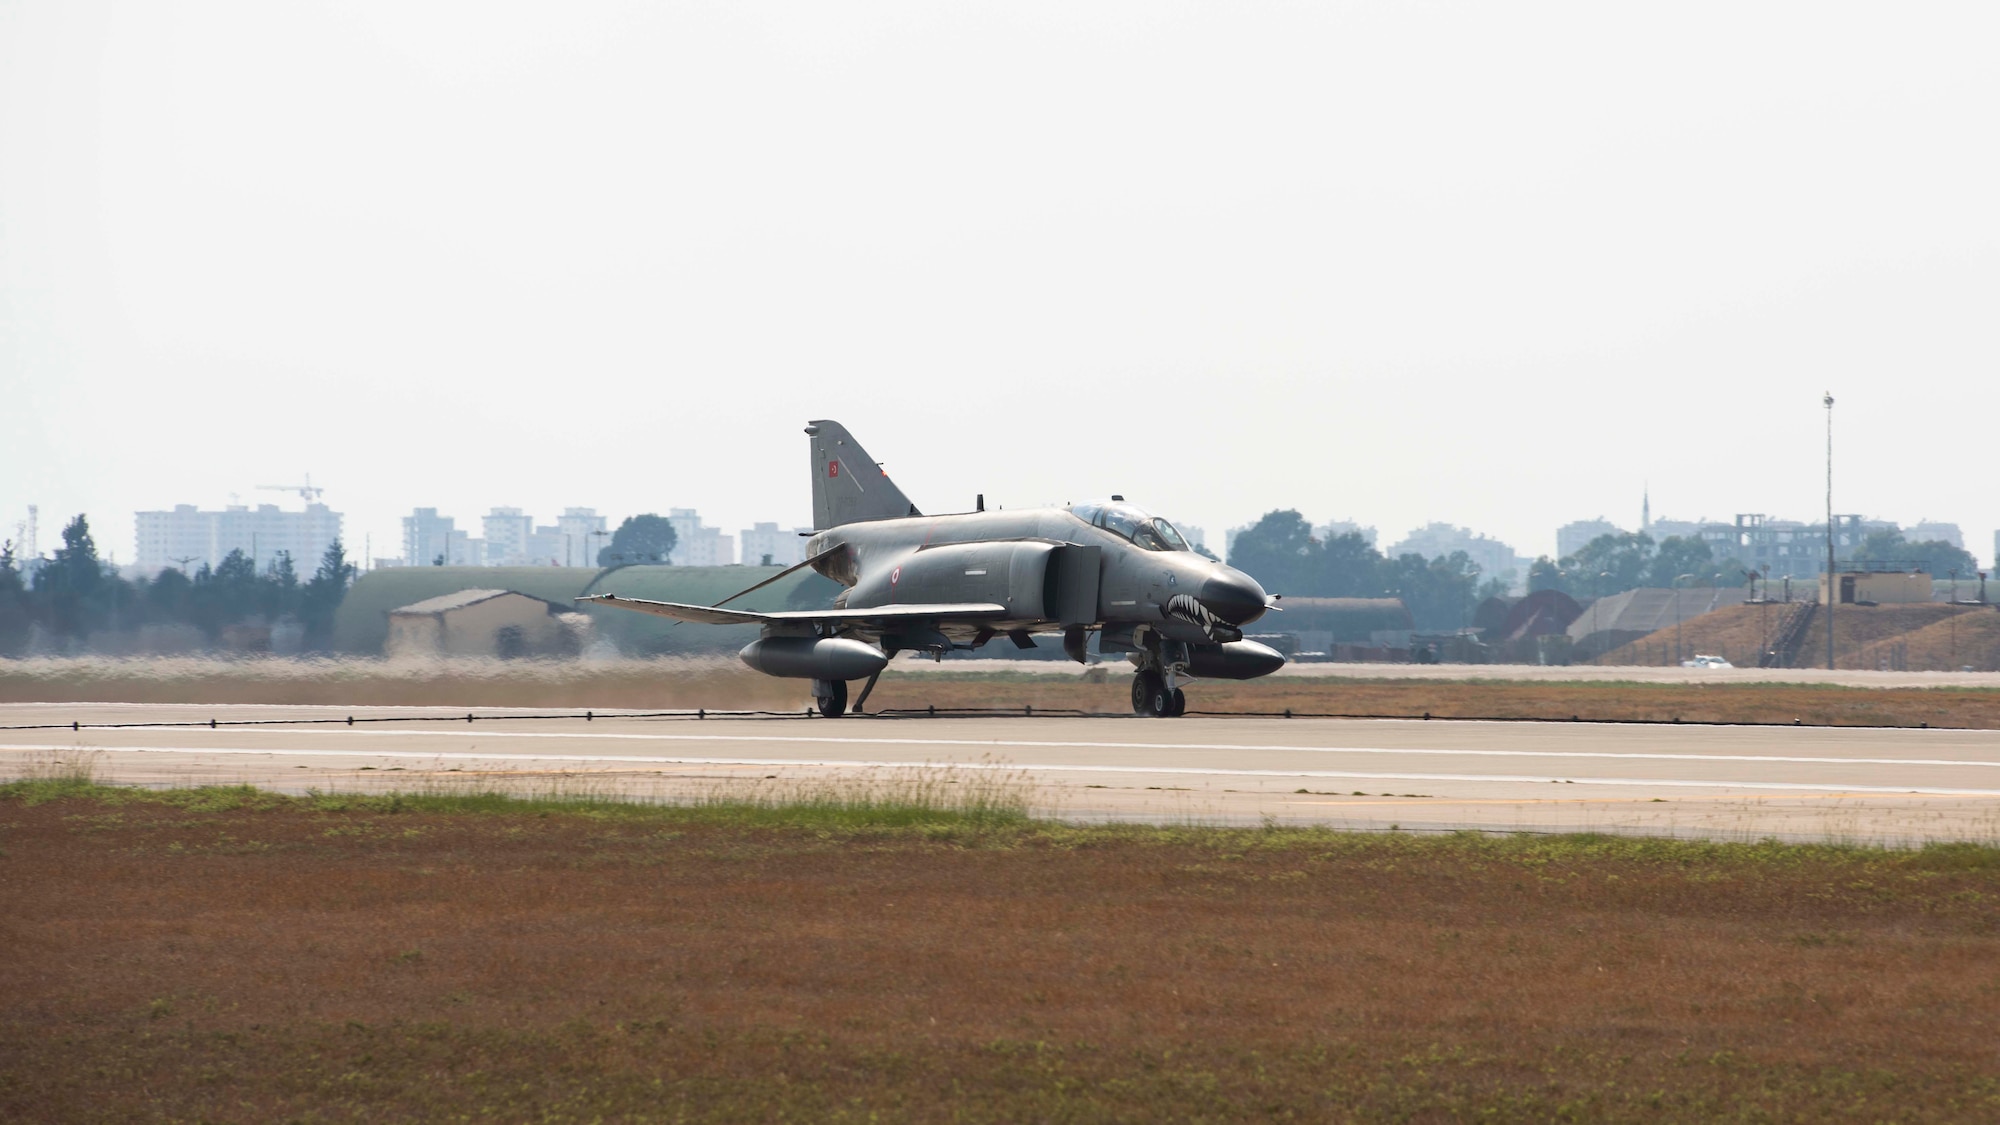 An F-4 fighter jet rolls down a runway